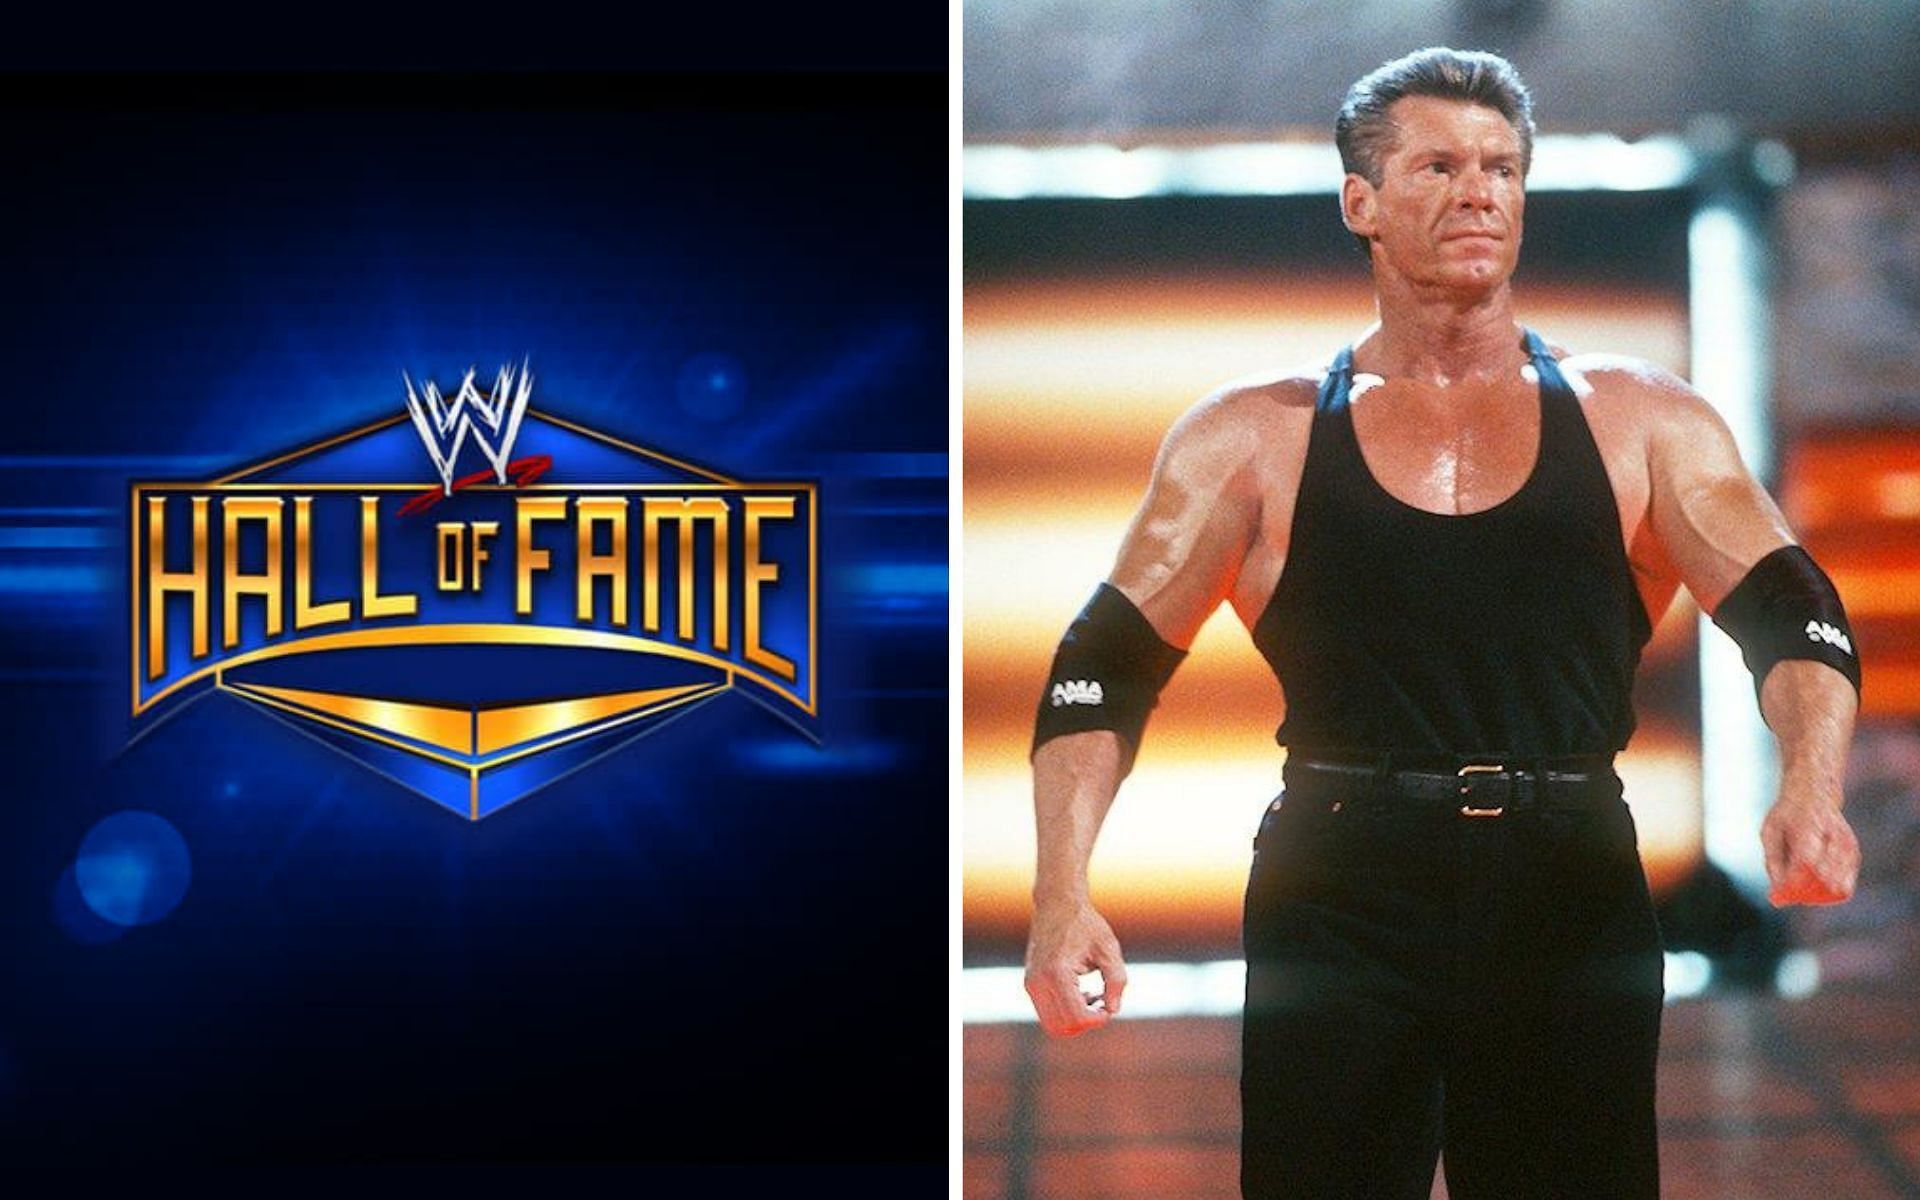 Vince McMahon won Royal Rumble 1999!